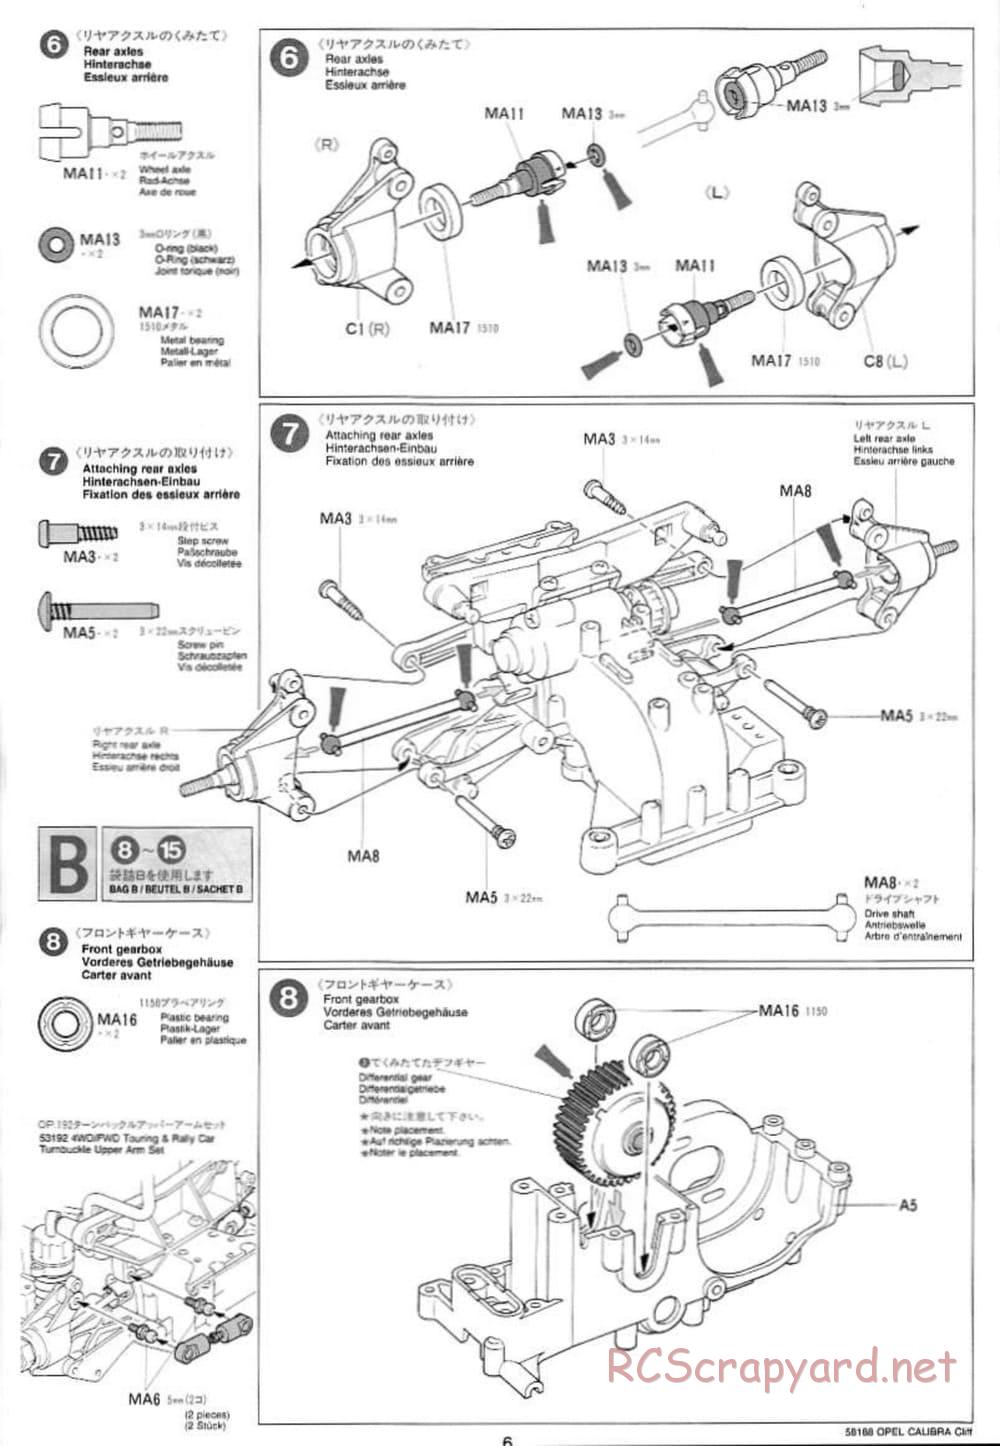 Tamiya - Opel Calibra Cliff - TA-03F Chassis - Manual - Page 6